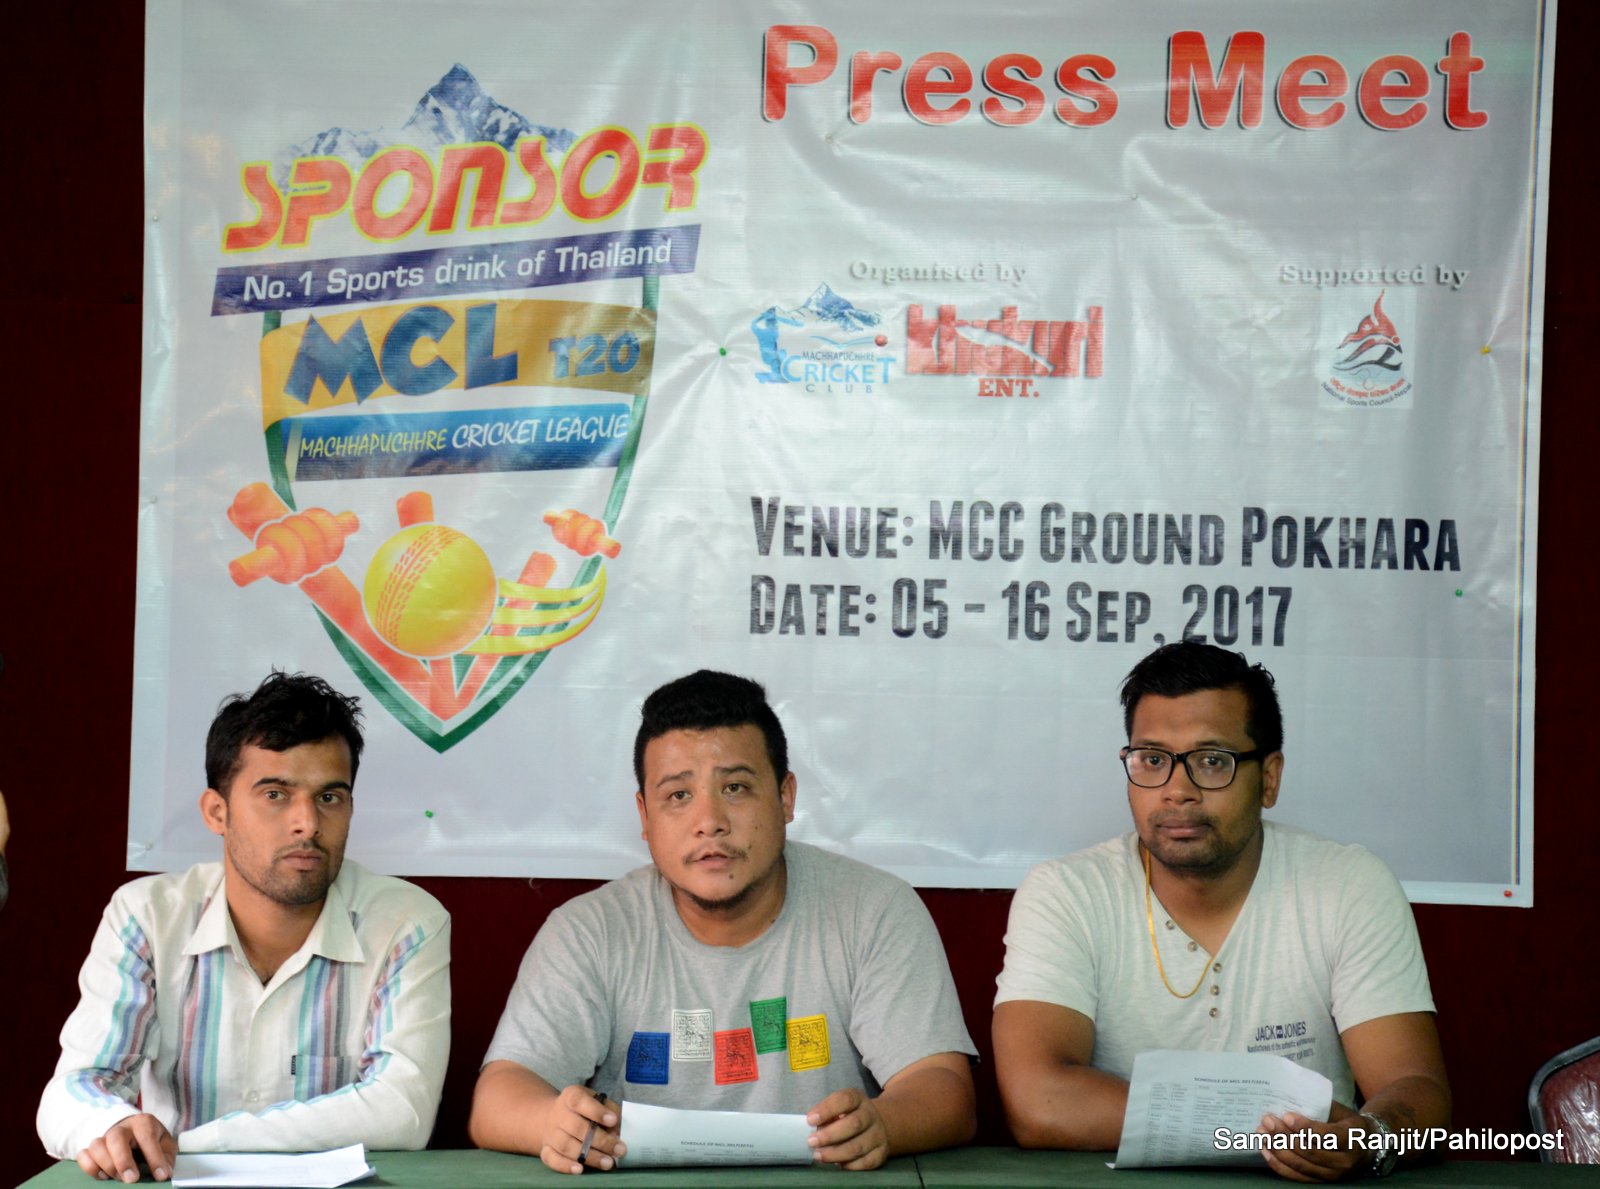 माछापुच्छ्रे क्रिकेट लिग (एमसीएल) टी-२० क्रिकेट प्रतियोगिता मंगलबारदेखि